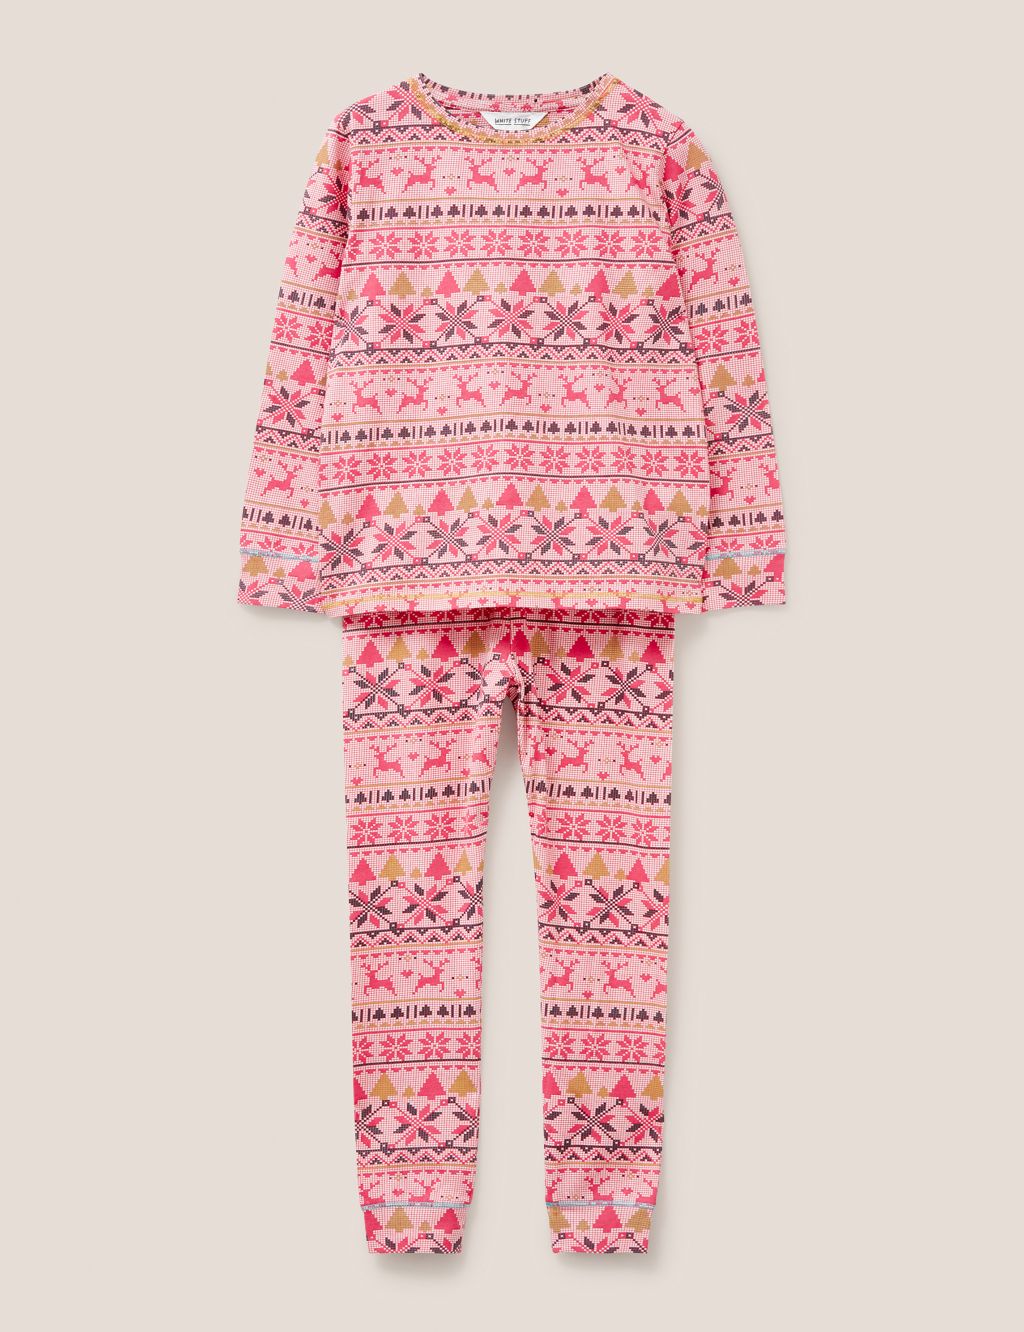 Cotton Rich Fair Isle Pyjamas (3-10 Yrs) image 1